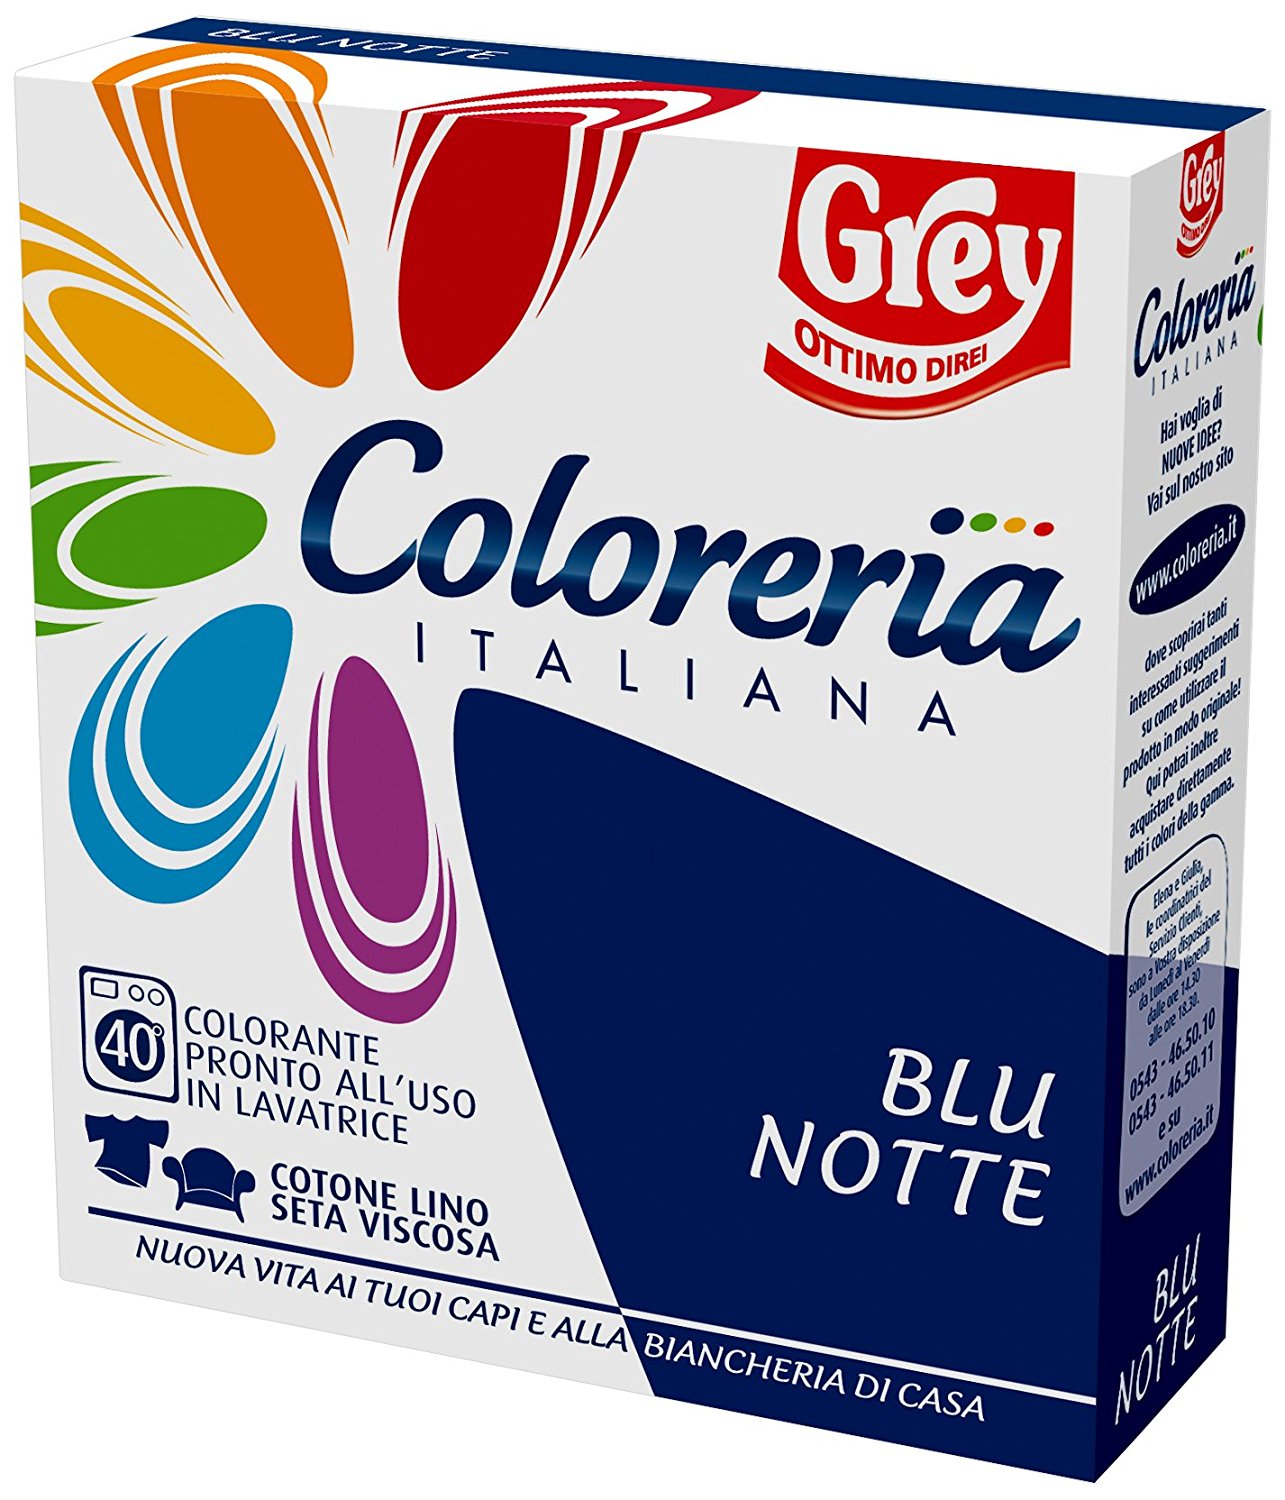 Coloreria Italiana - Blu Notte 175 gr. - Grey - Tabaccheria Scuotto